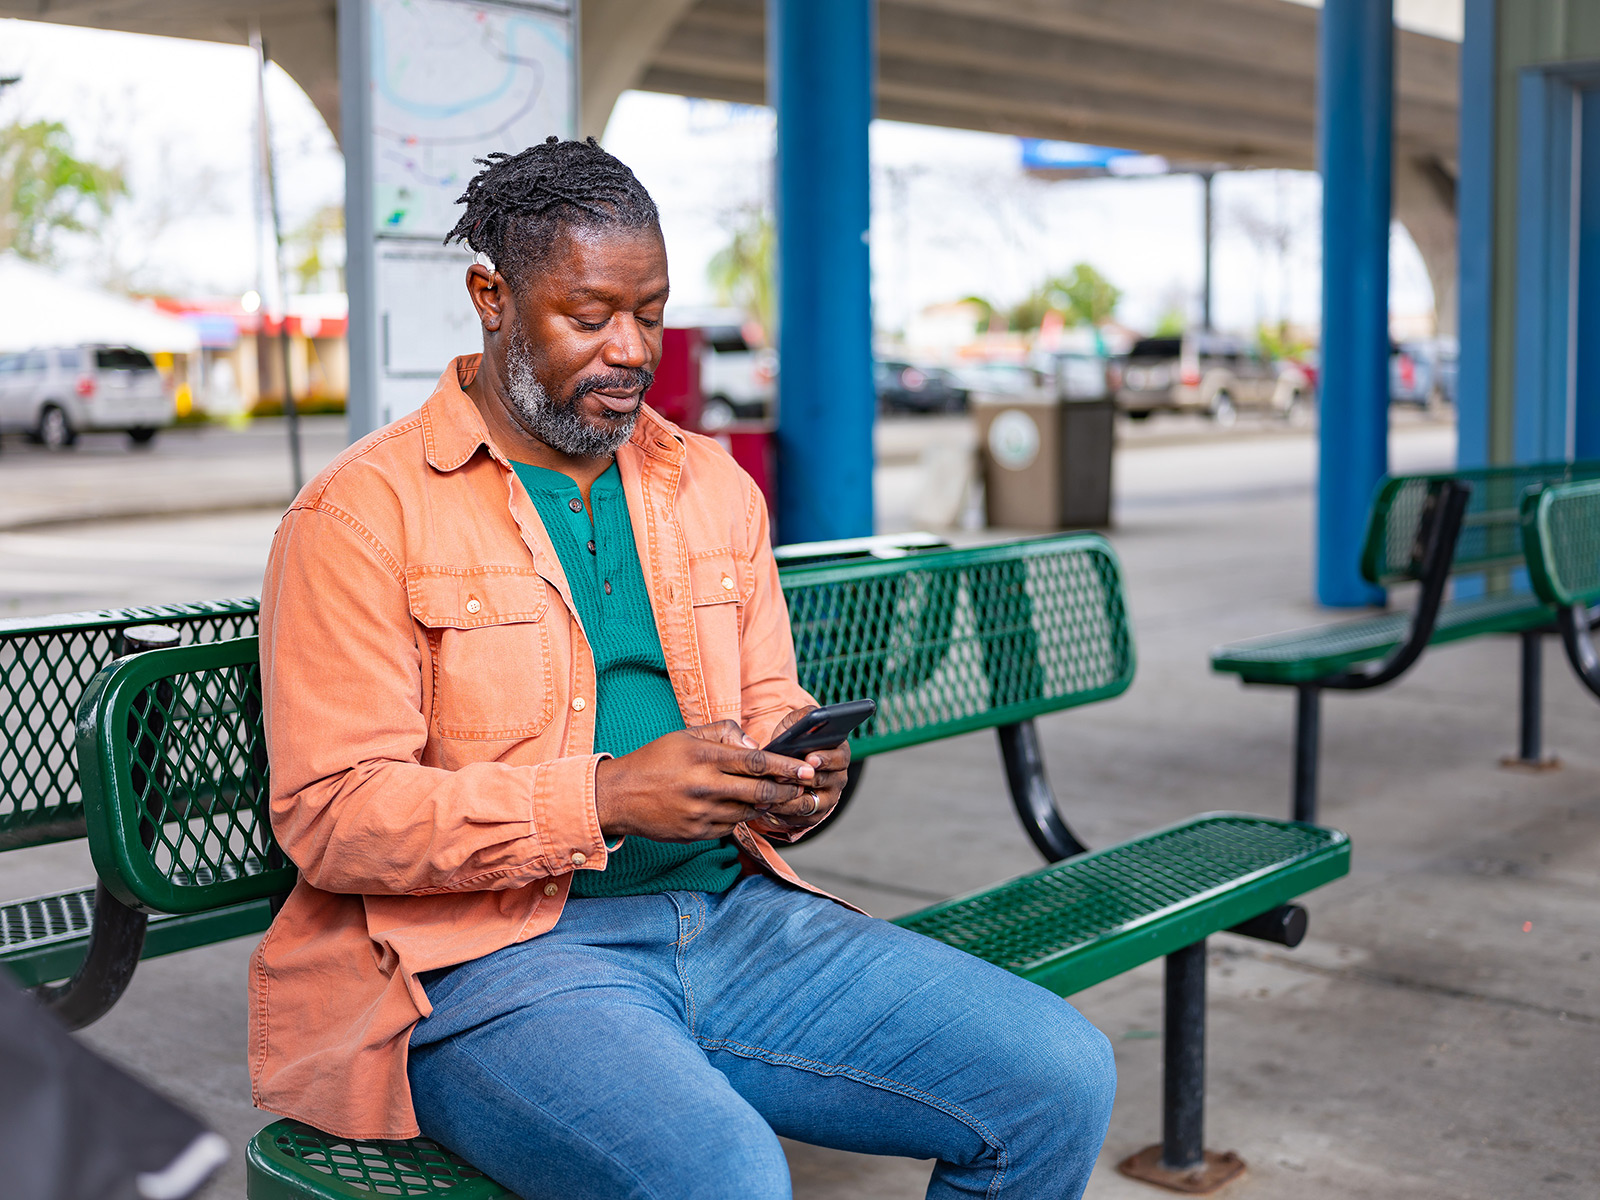 Afiliado de Medicaid usa el teléfono sentado en un banco de la ciudad